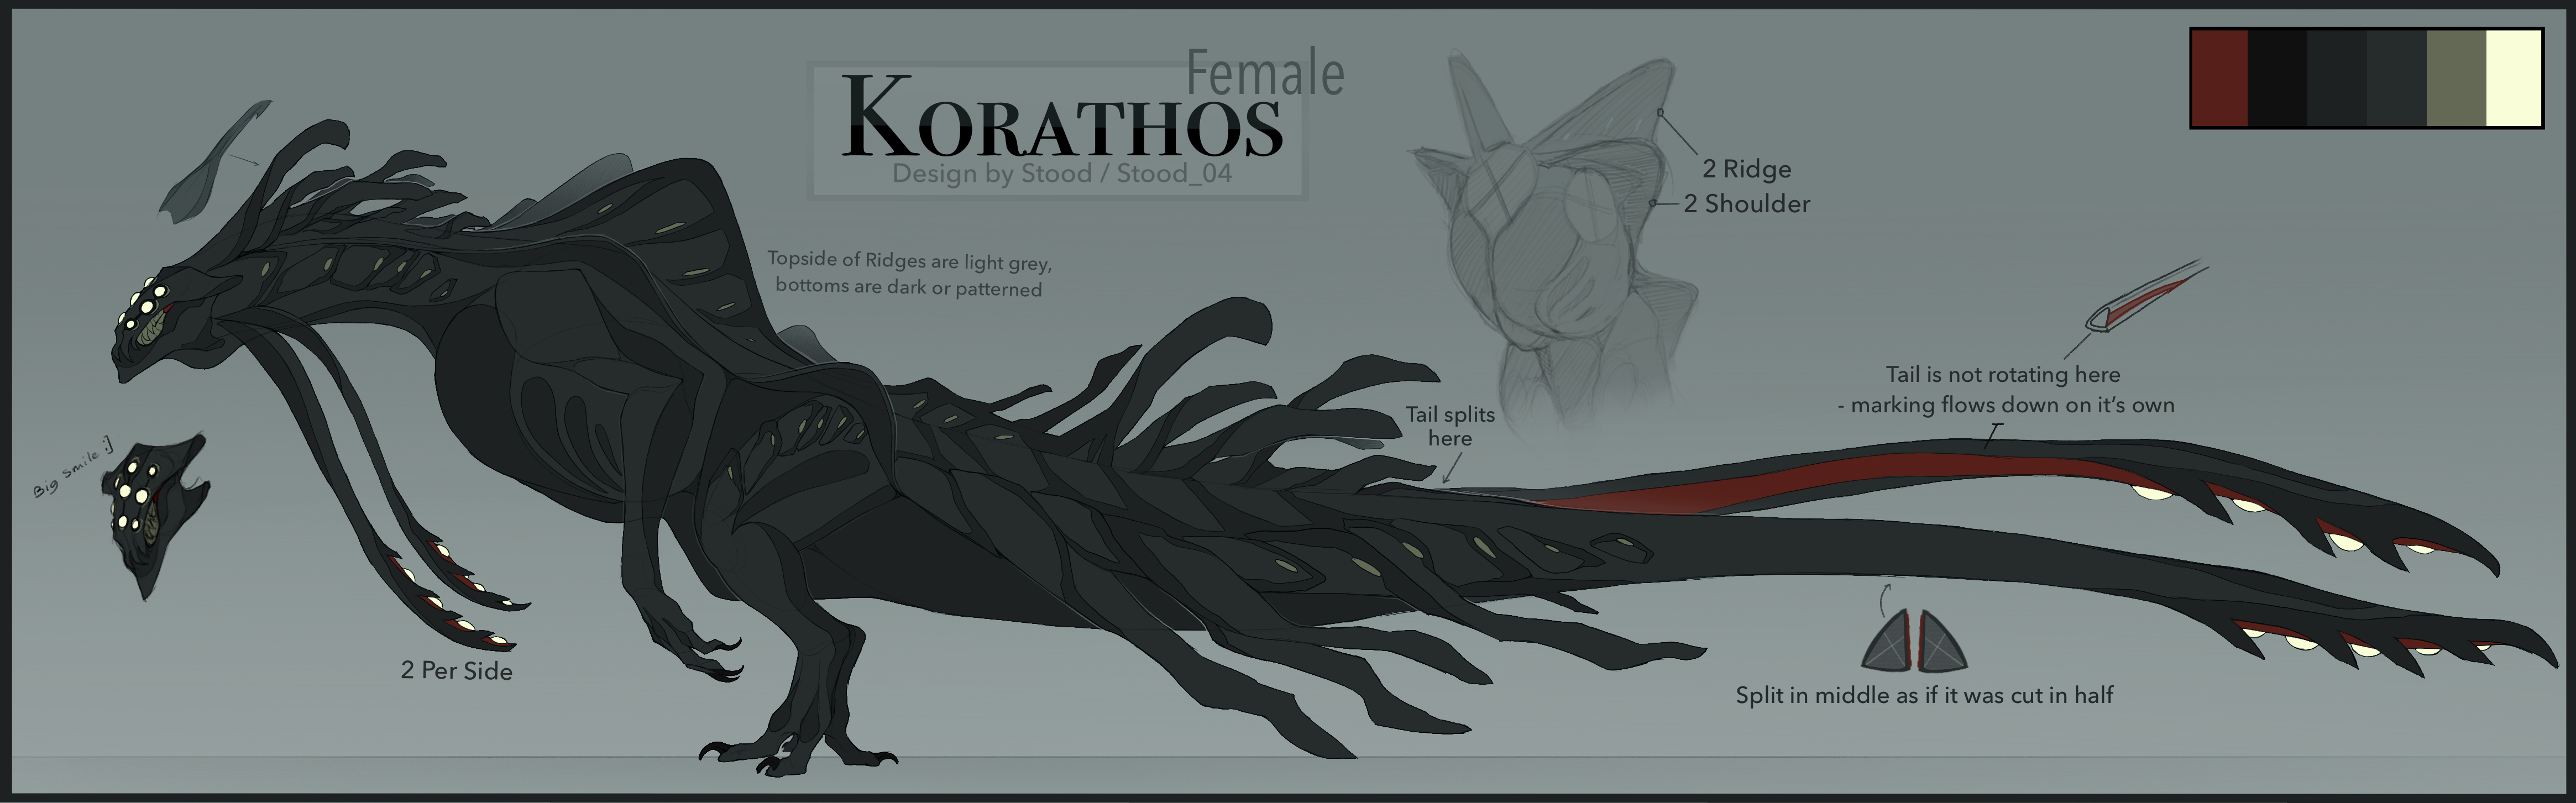 NEW GIANT ALIEN KAIJU! How To Get korathos - ROBLOX Creatures Of